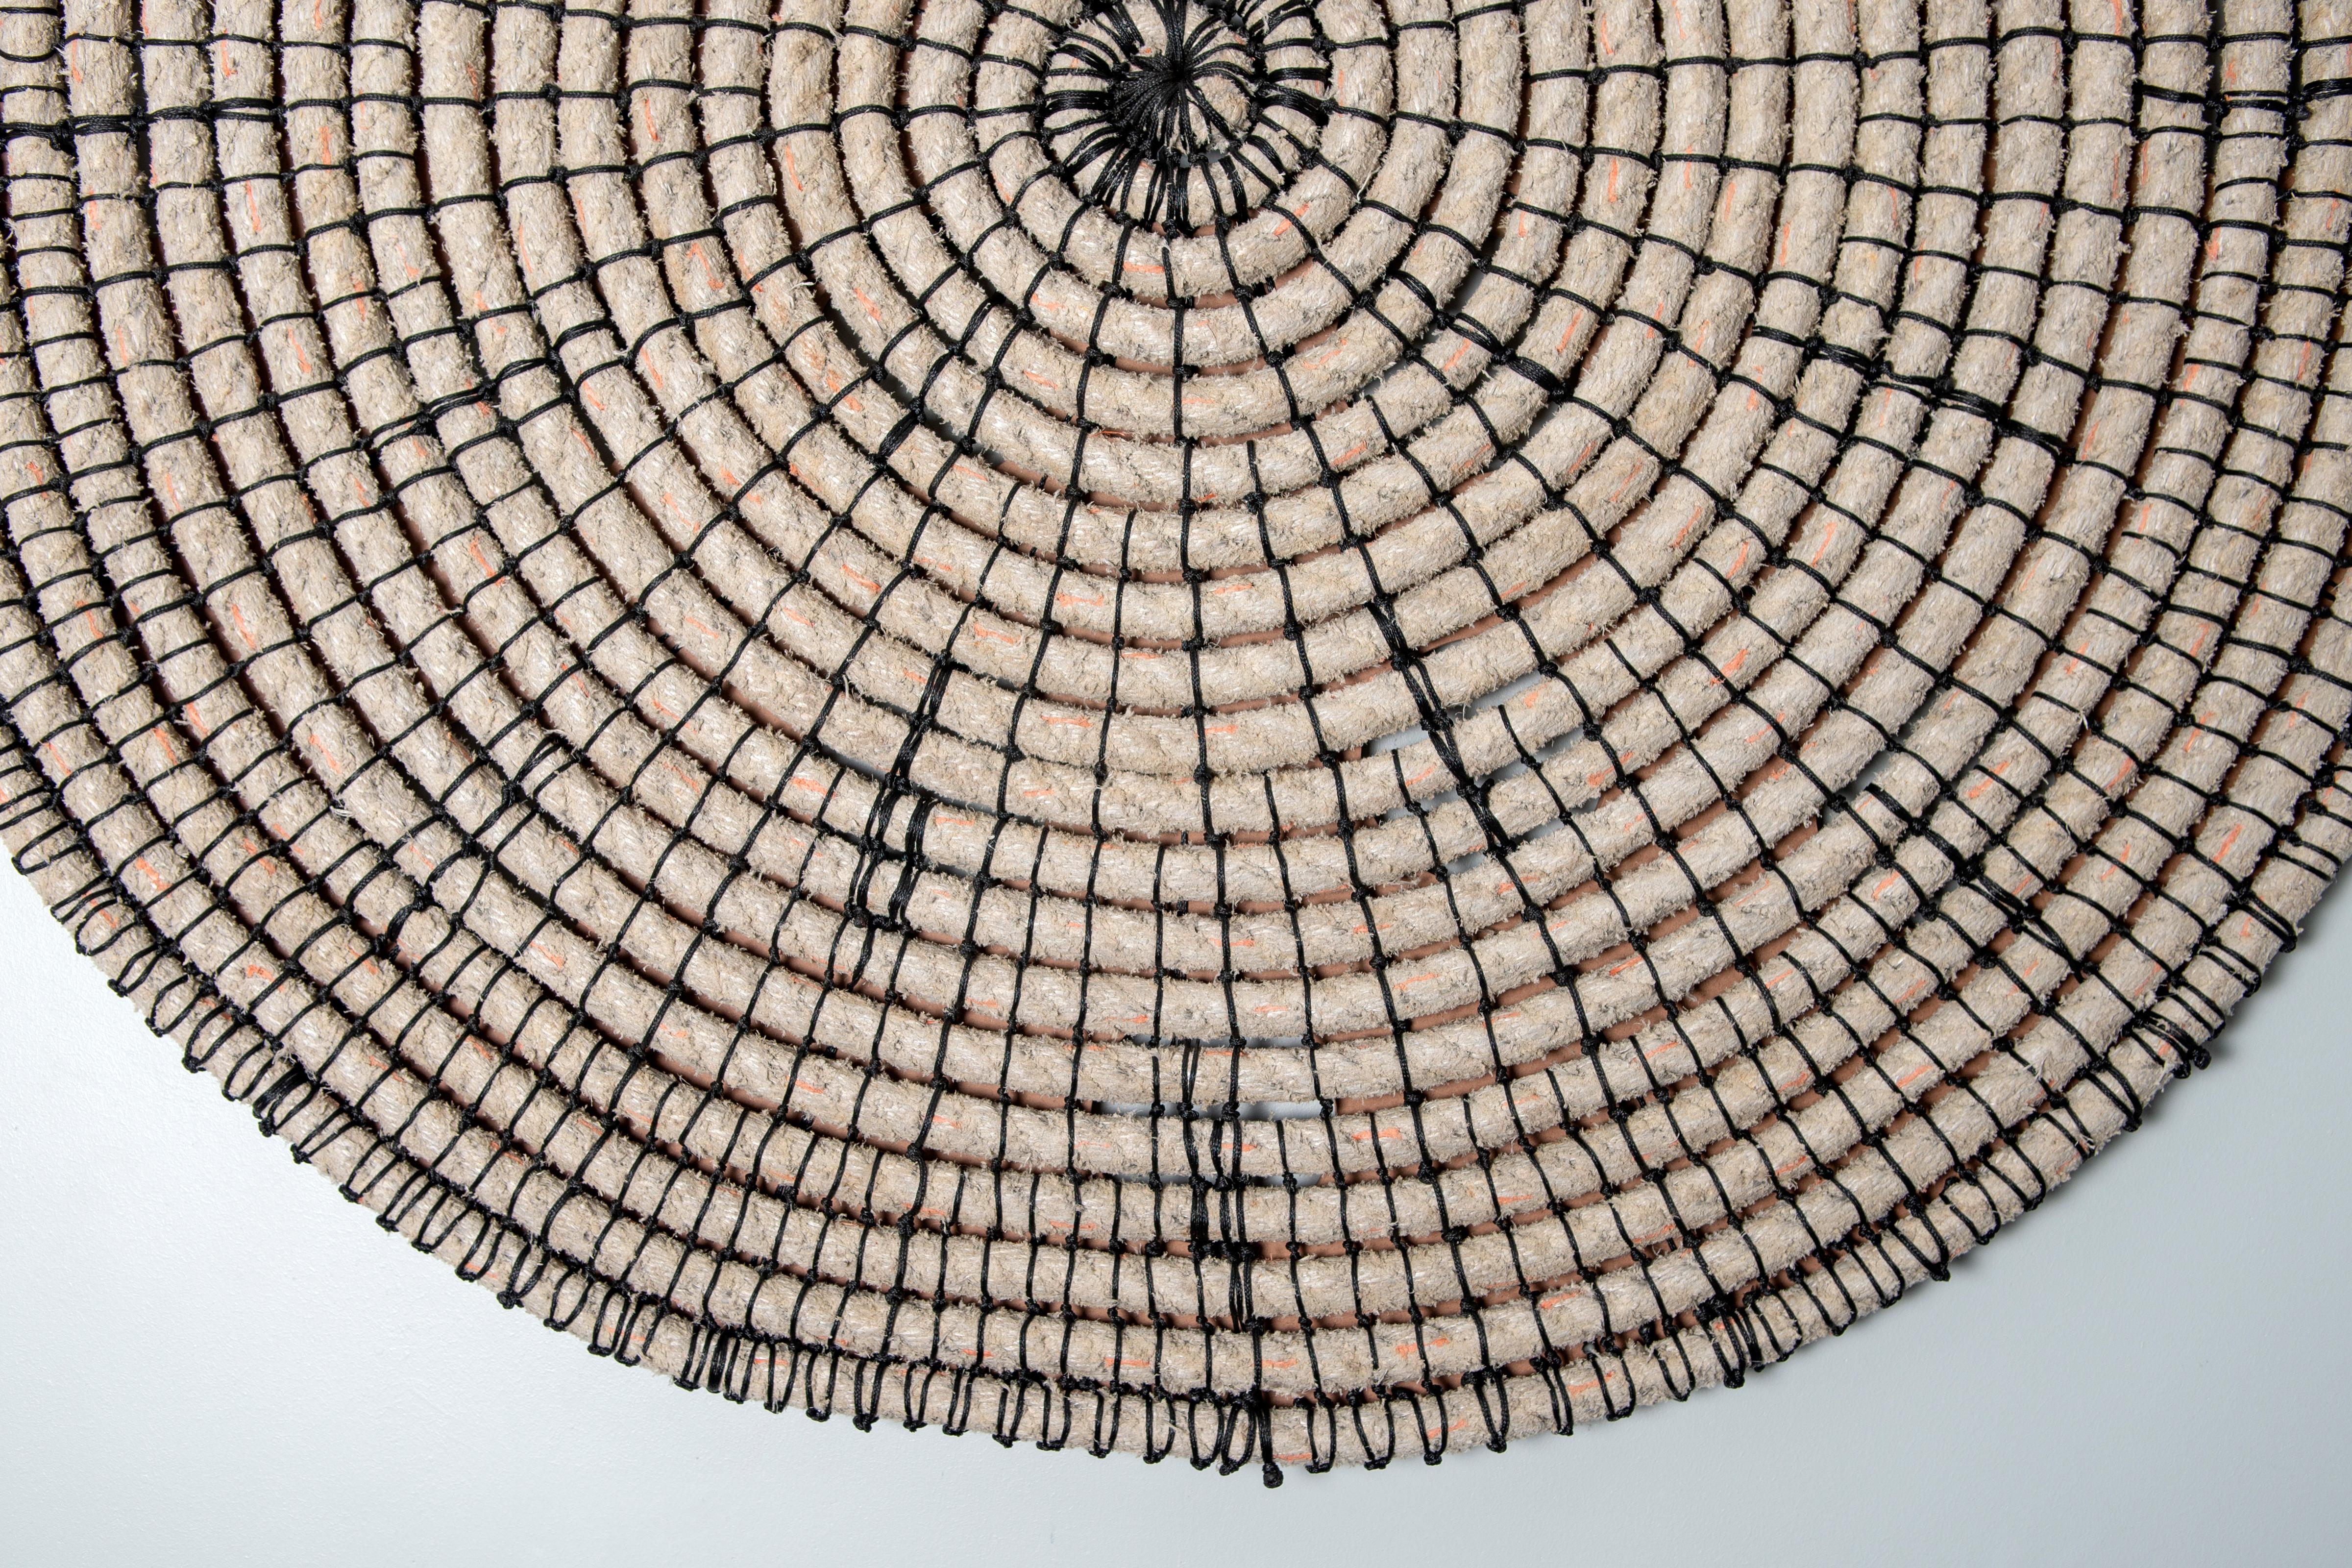 Baskets reimagined 1, Laimi Mbangula, rope, acrylic string, wooden base 3